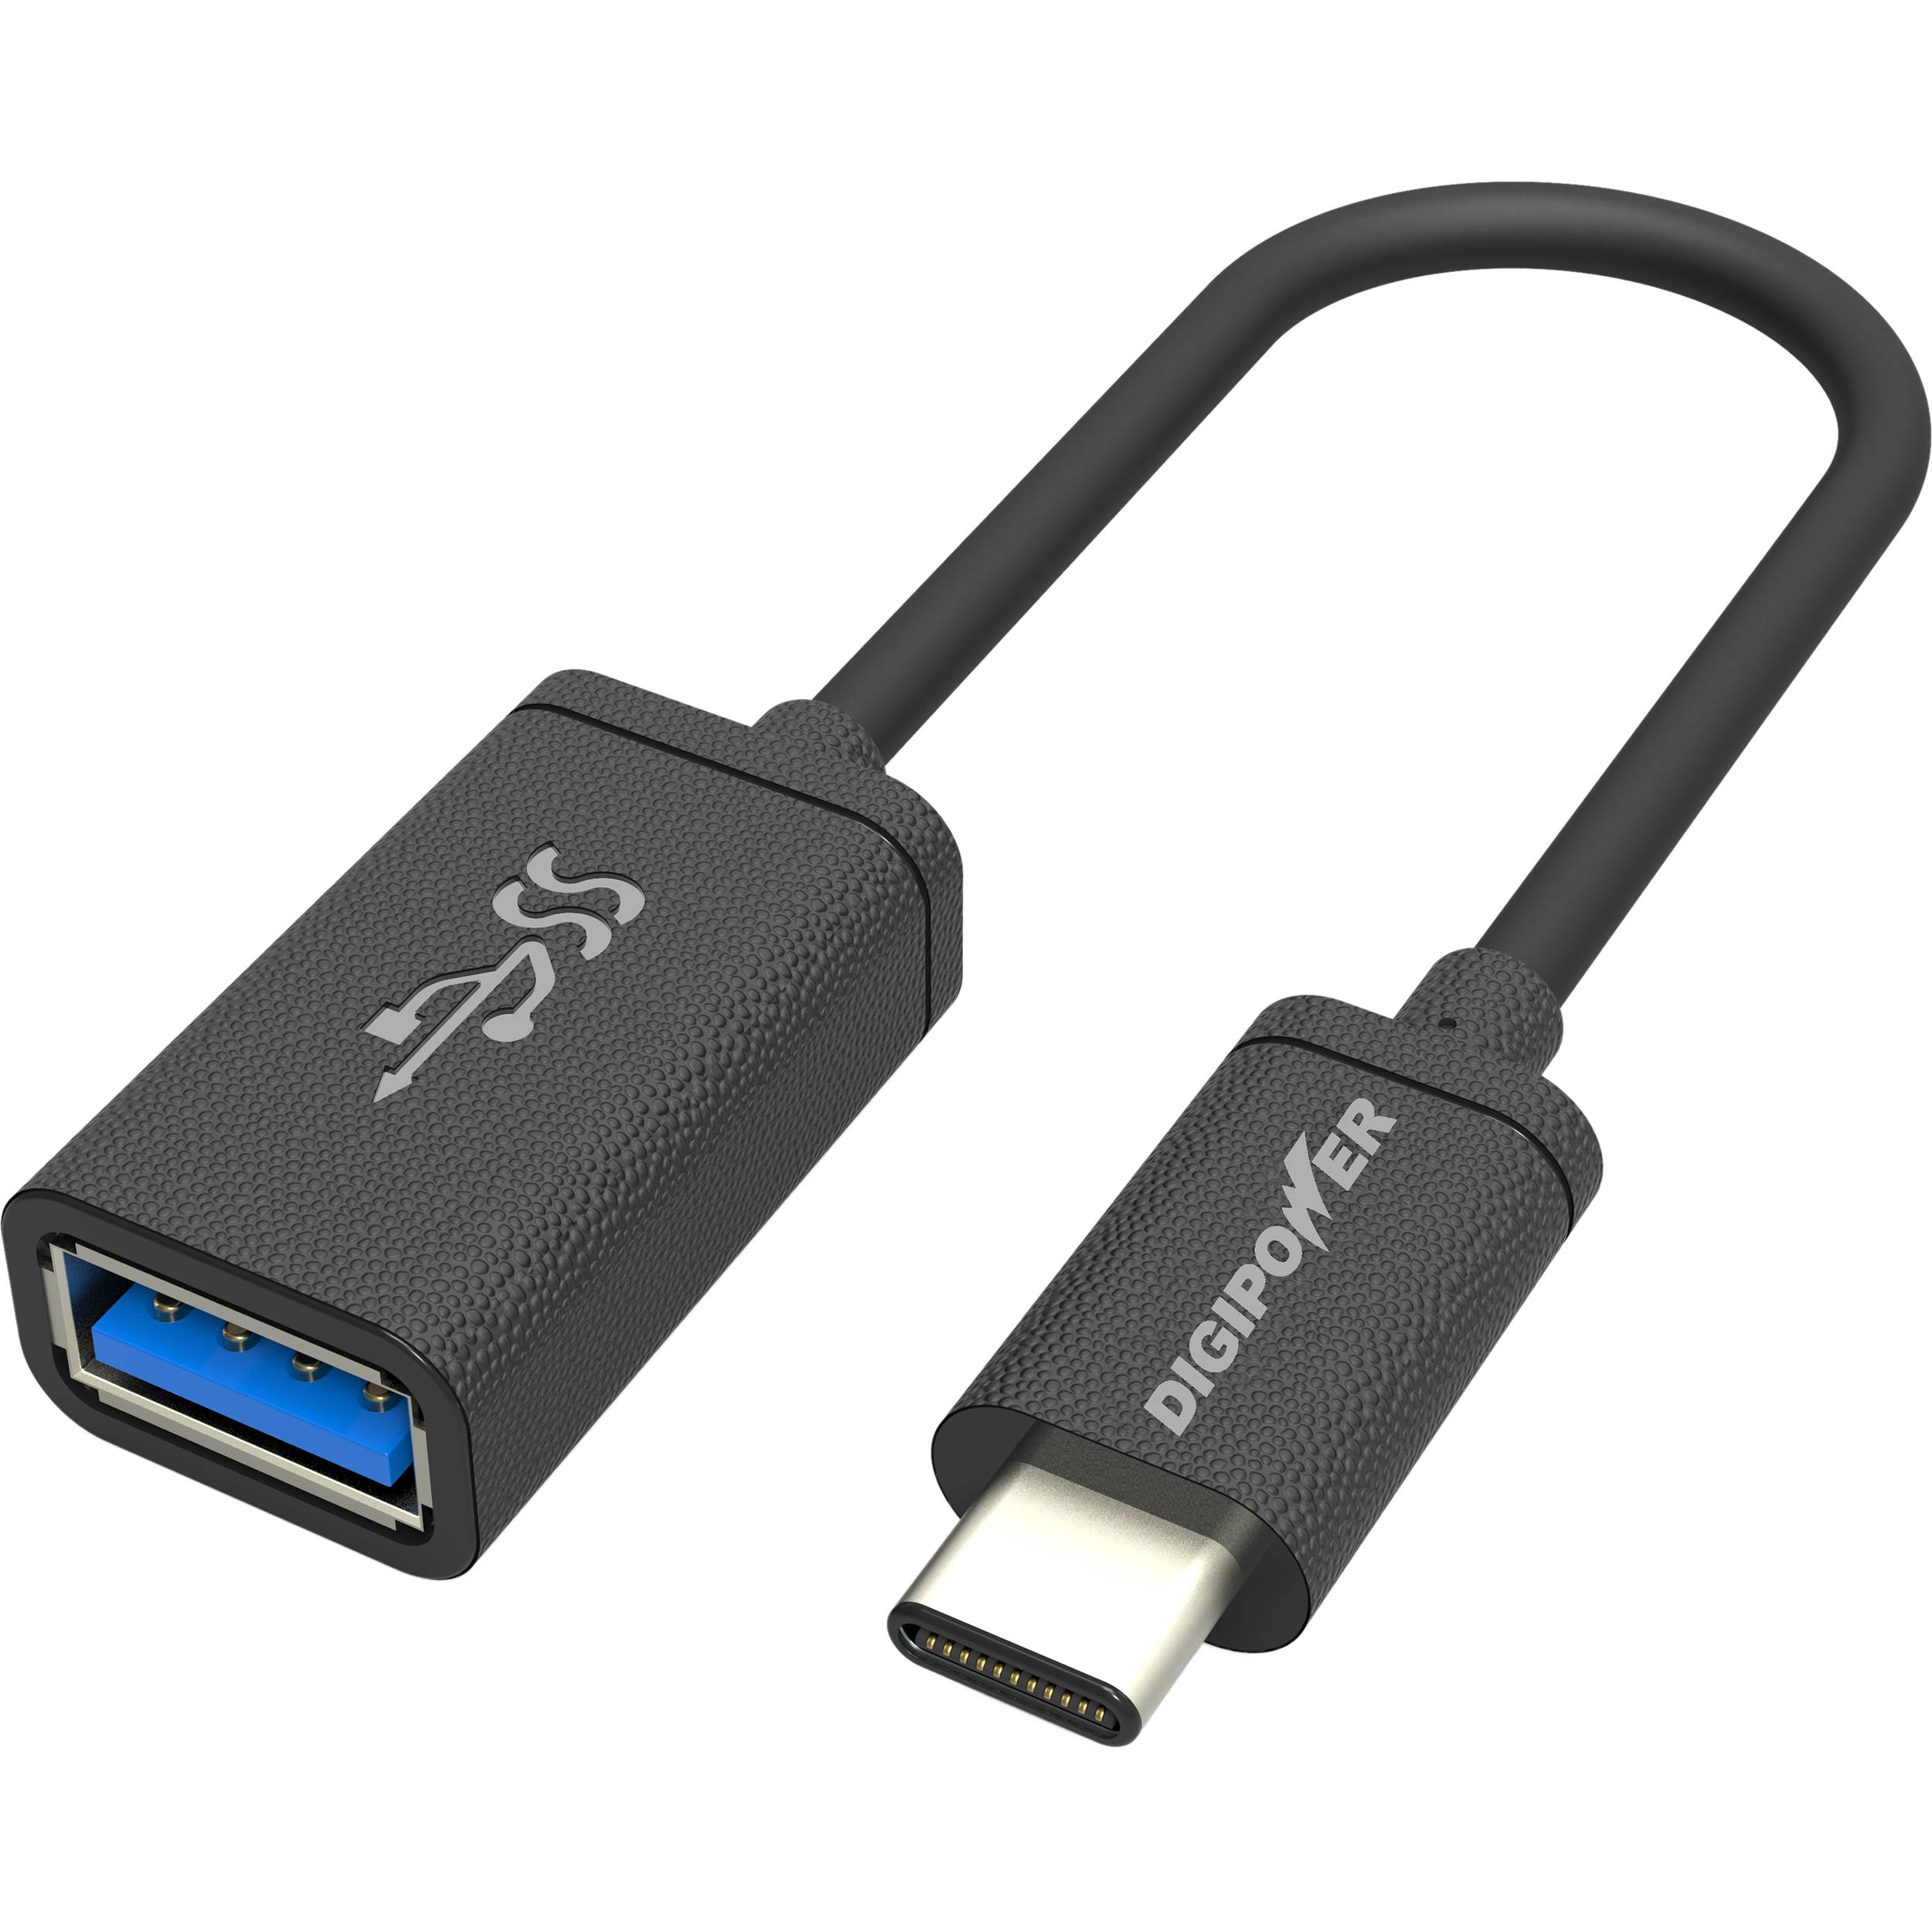 Usb c gen1. USB 3.1 (USB Type-c). Юсб 3.1 Type c. Флешка USB 3.0 Type c. USB 3.1 C-Type/USB3.0.